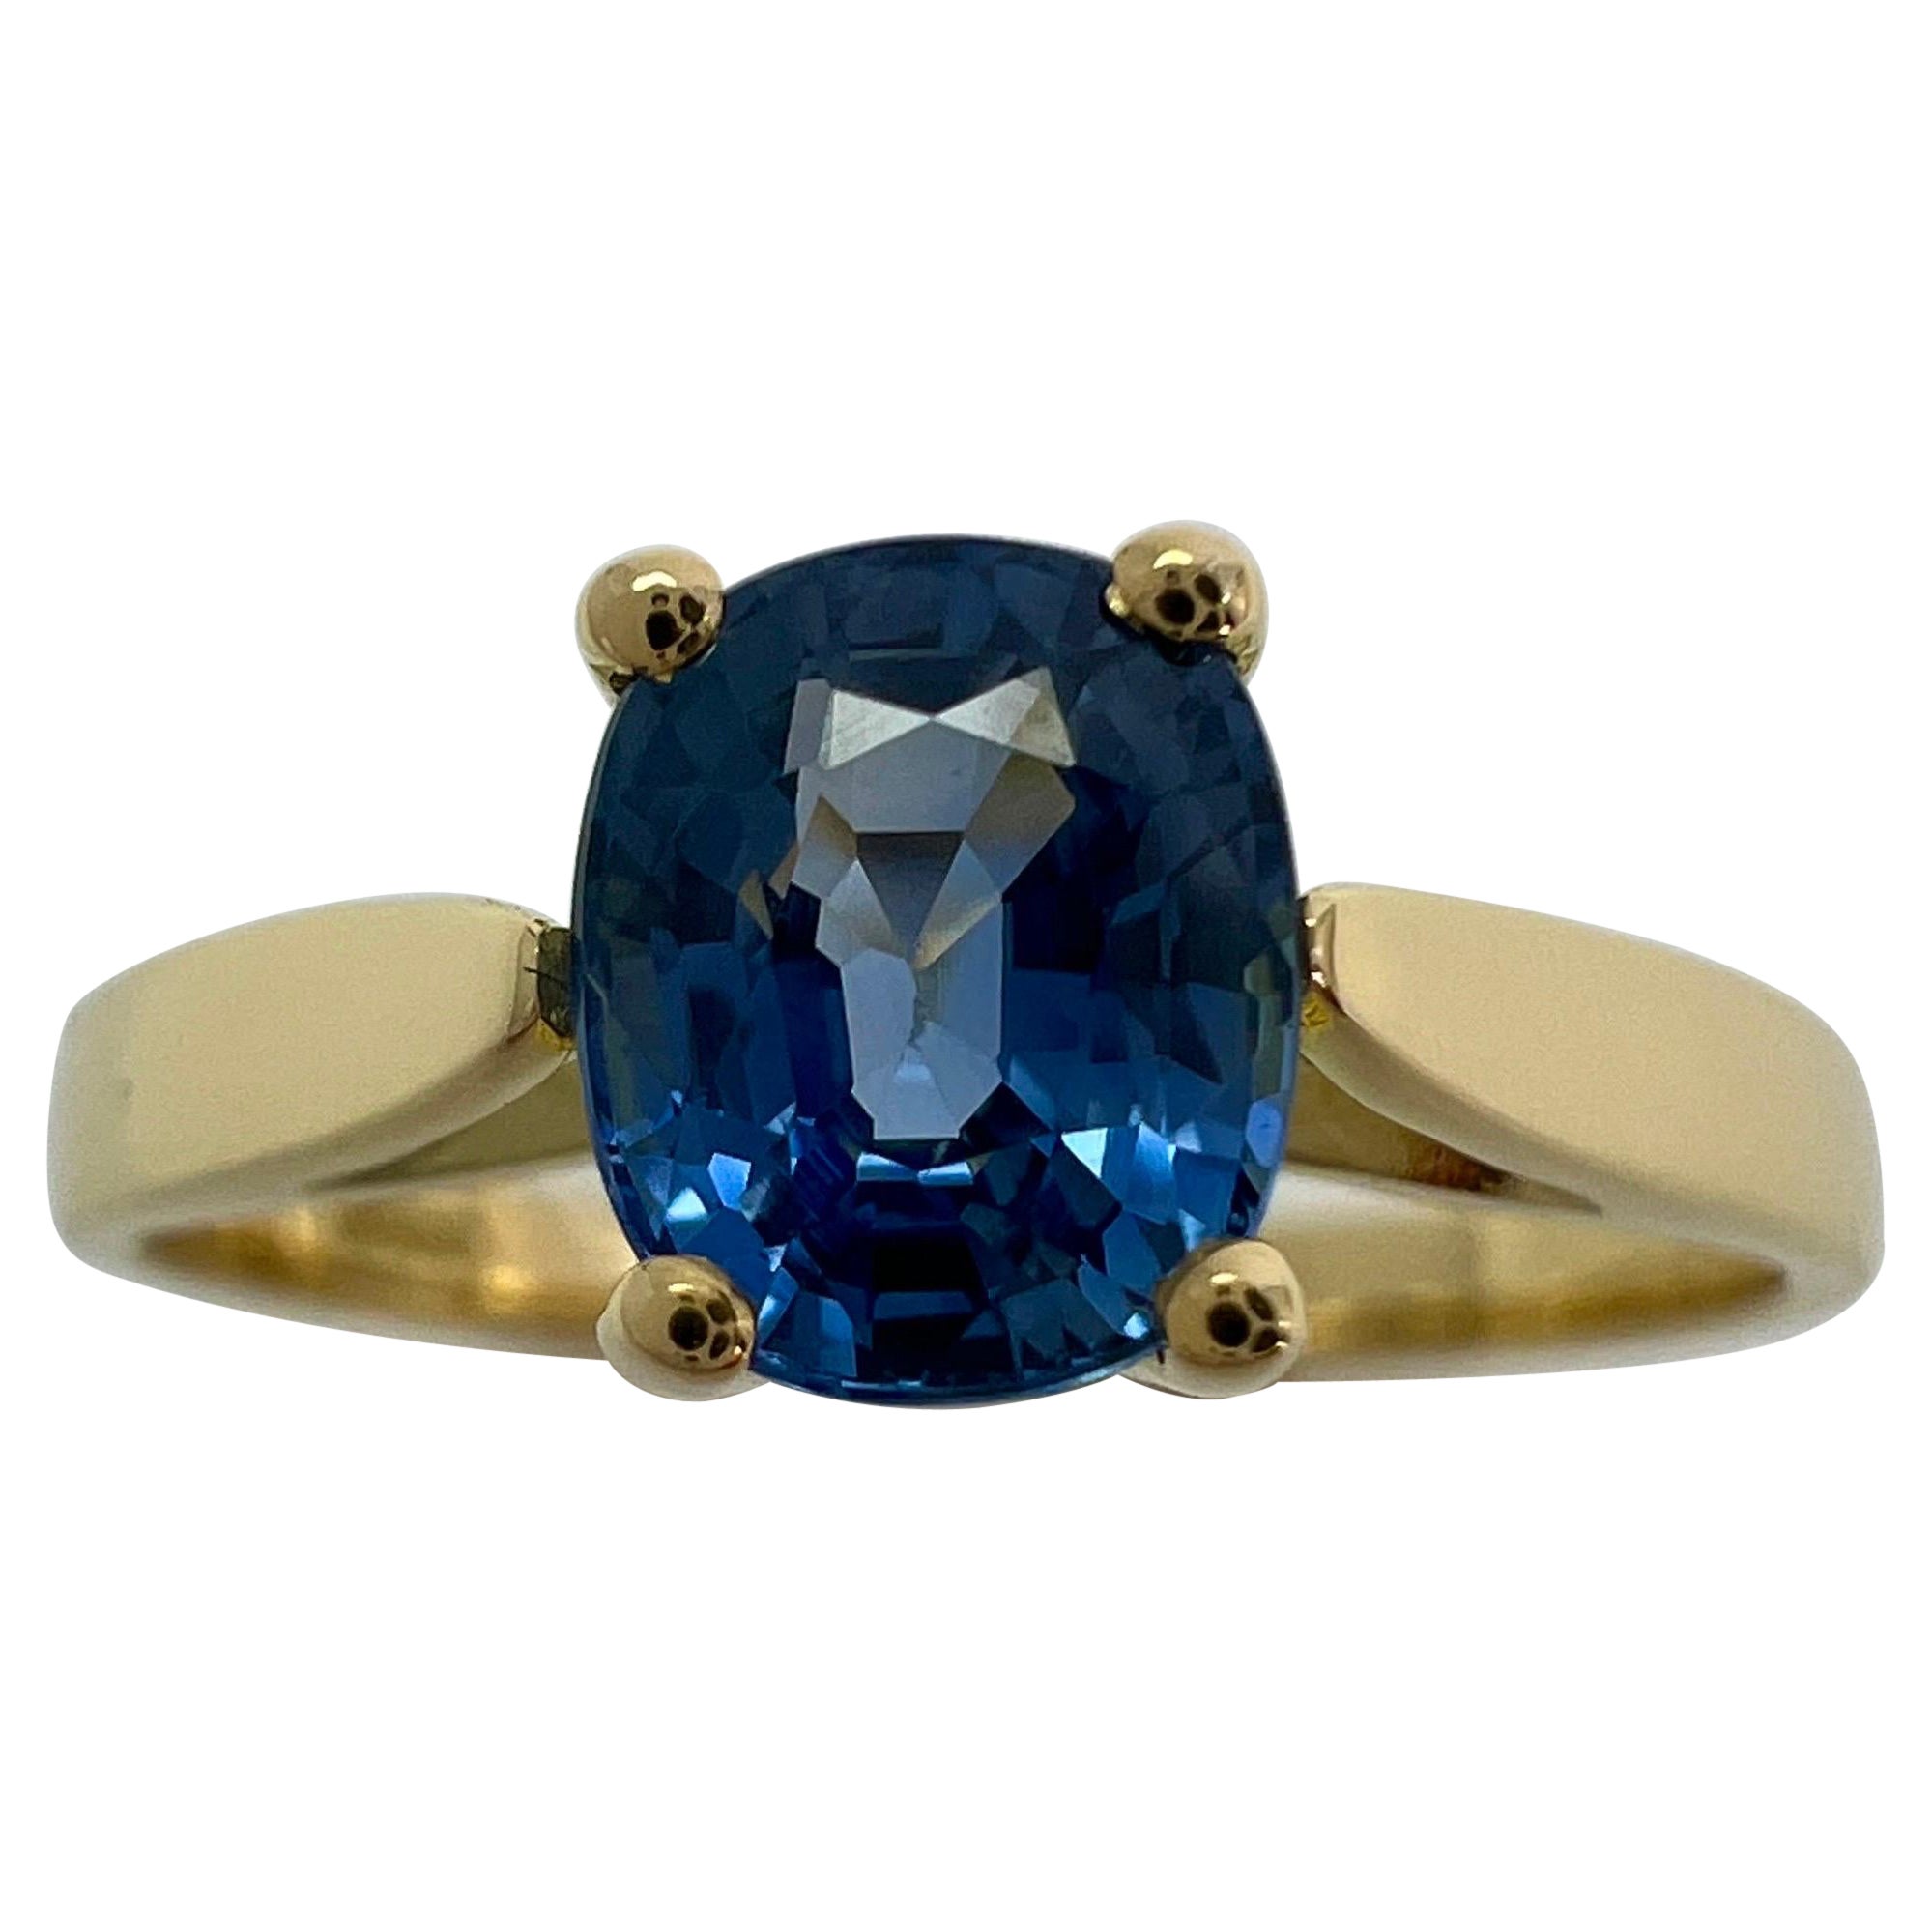 Vivid Cornflower Blue 1.03ct Ceylon Sapphire Cushion Cut 18k Gold Solitaire Ring